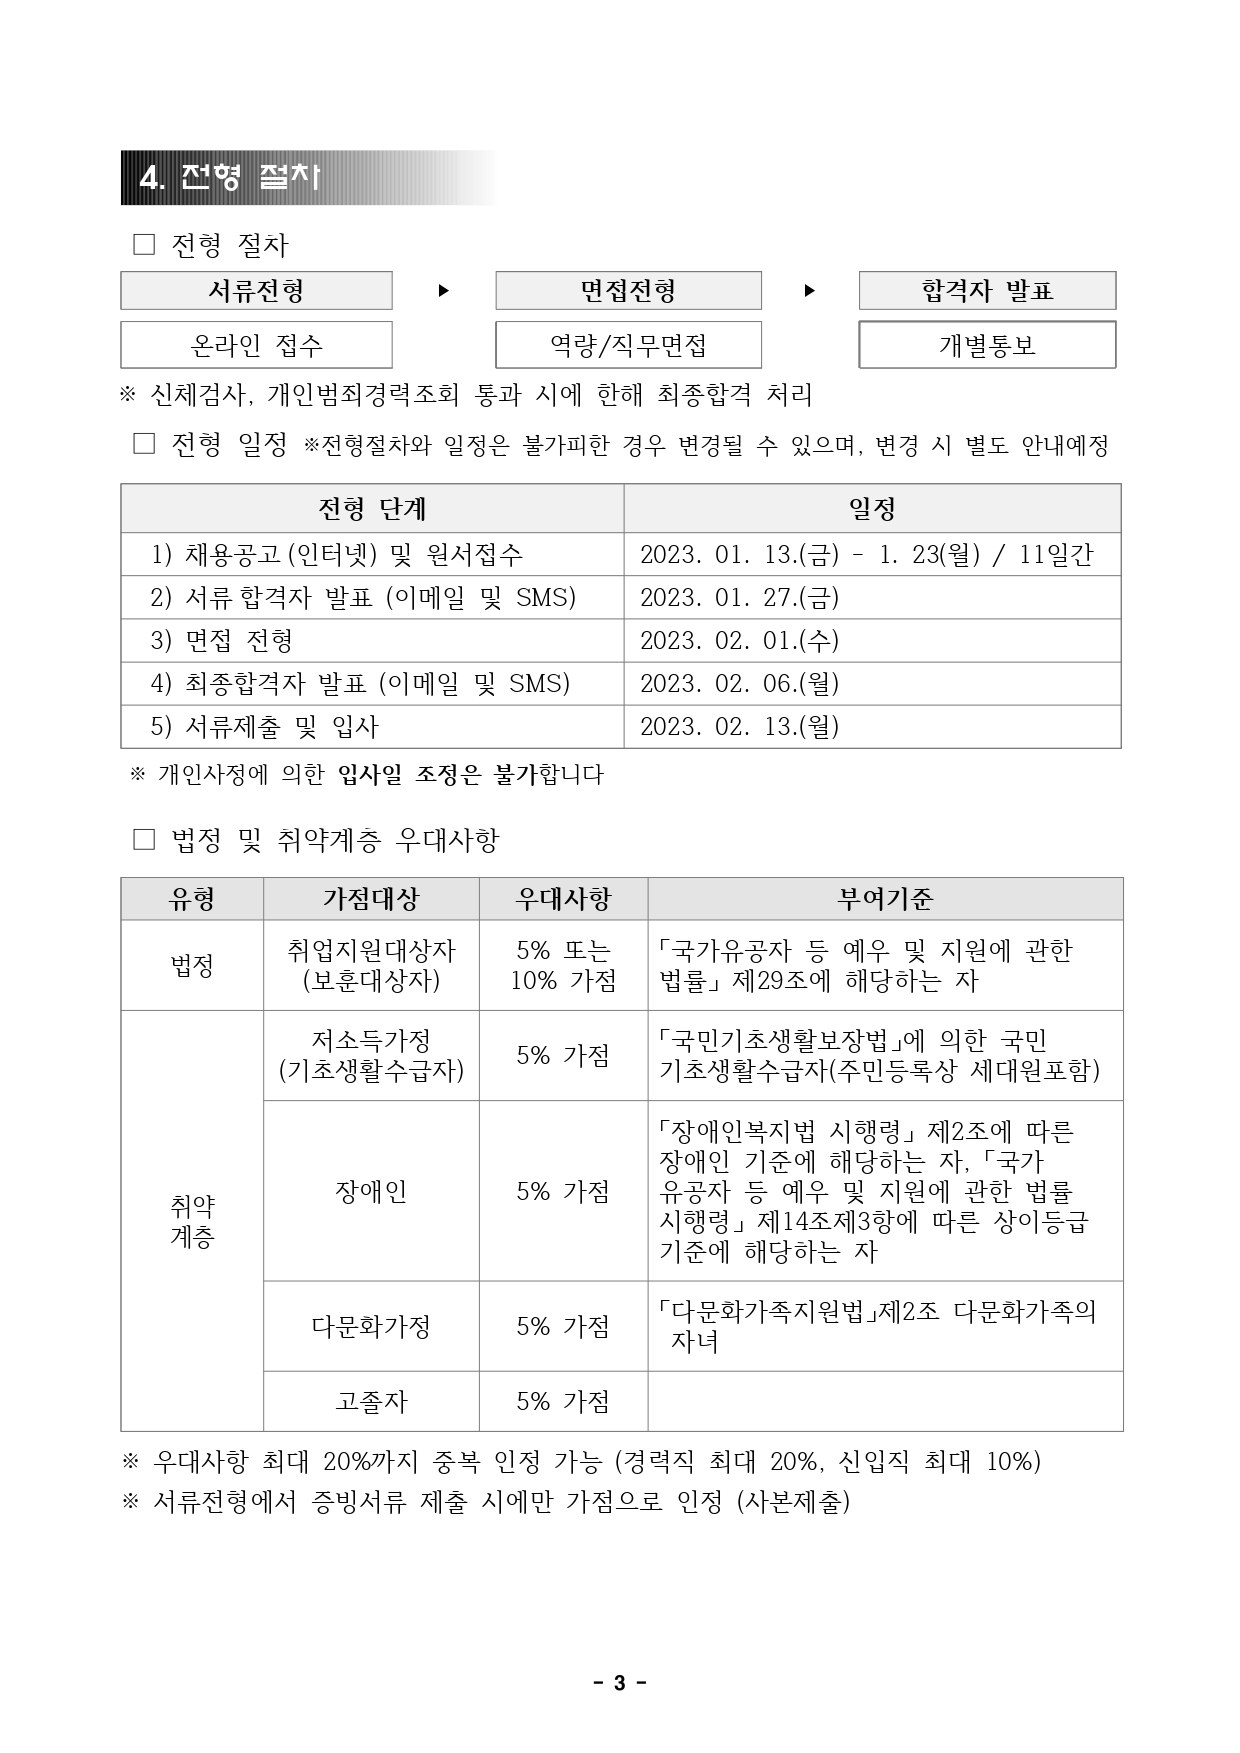 붙임4. 직원채용 공고문(서울,컨벤션)_page-0003.jpg